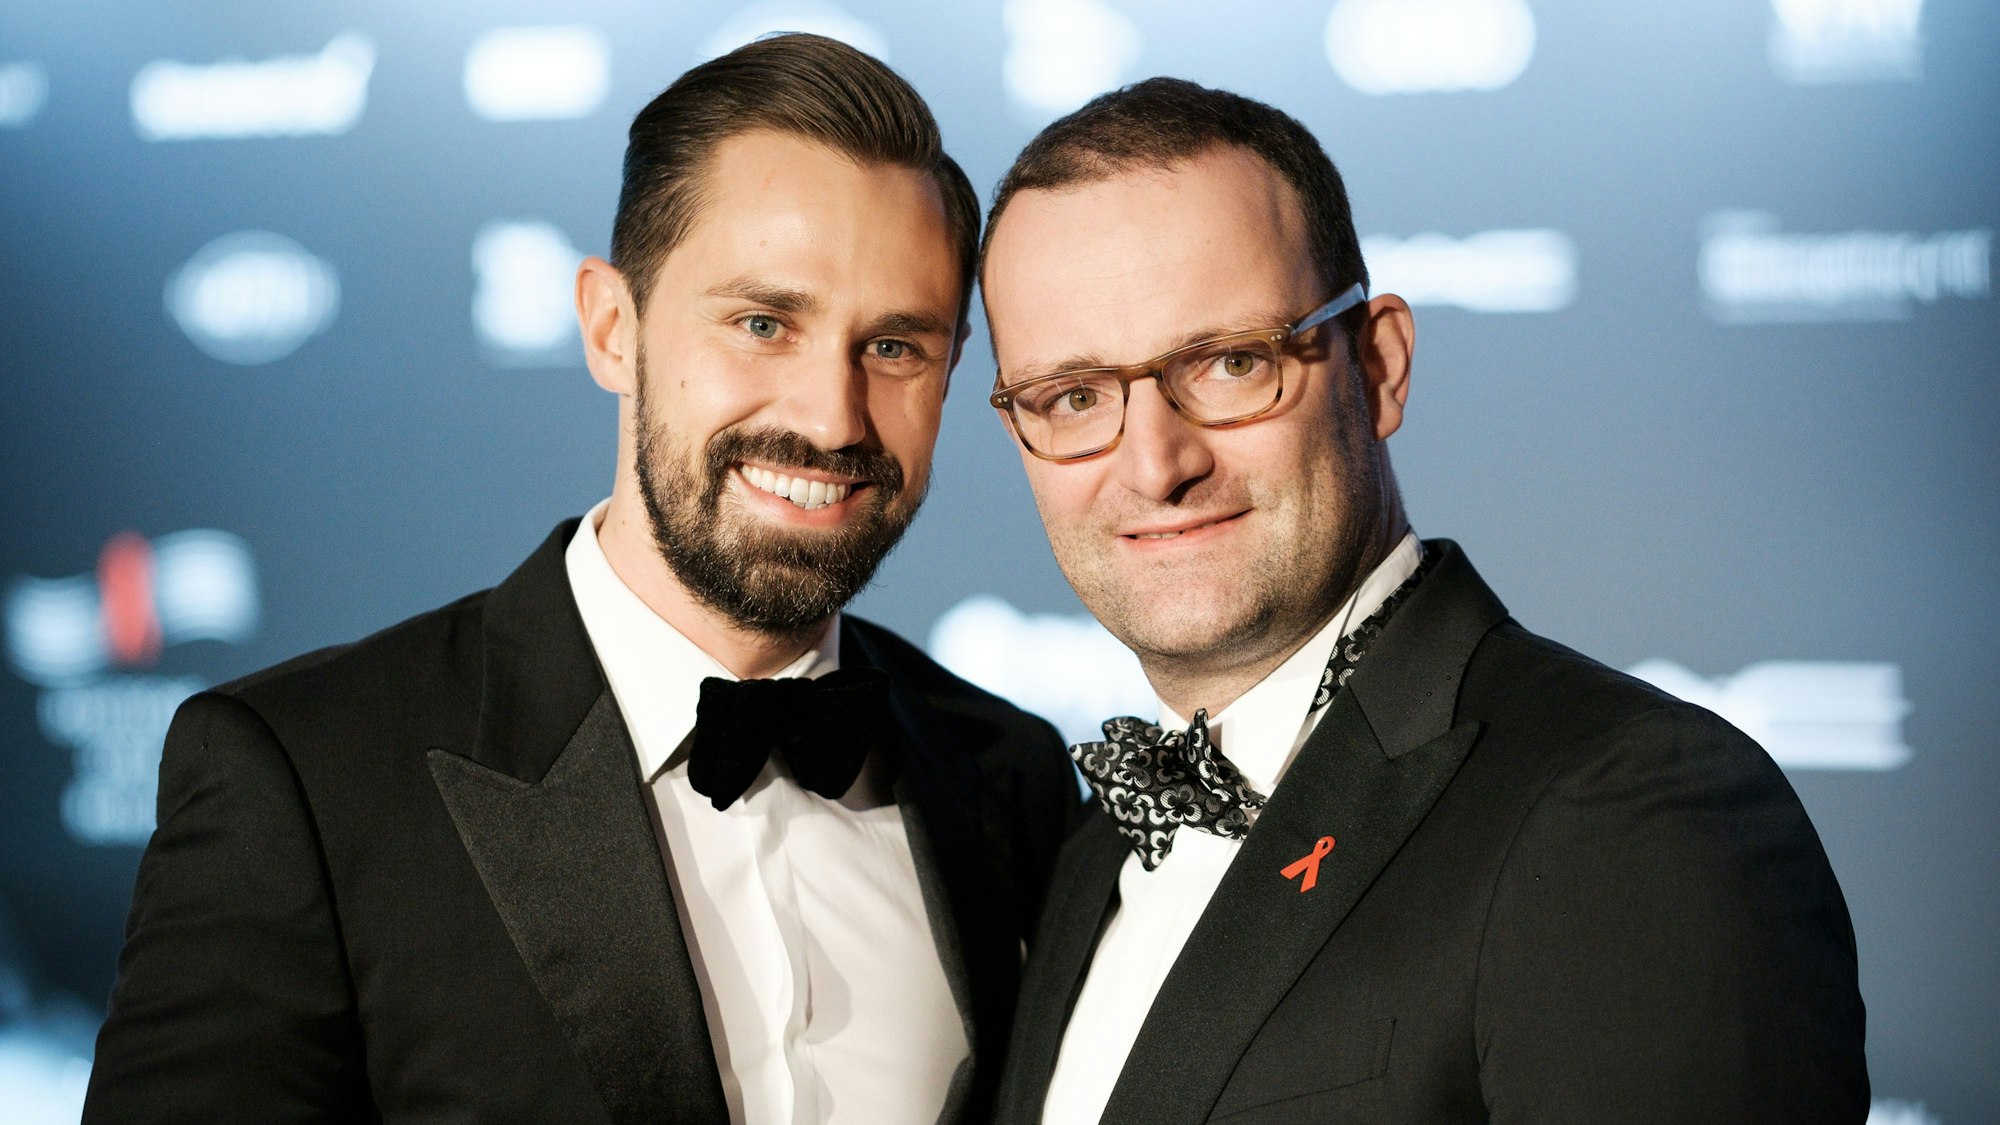 CDU-Gesundheitspolitiker Jens Spahn (CDU) und Journalist Daniel Funke (l), mit dem Spahn mittlerweile verheiratet ist, kommen zur 23. Operngala für die Deutsche Aids-Stifung. (zu dpa "Ganz gelassen: Spahn reagiert auf schwulenfeindliche Hetze" vom 13.02.2018) Foto: Robert Schlesinger/dpa-Zentralbild/dpa +++ dpa-Bildfunk +++